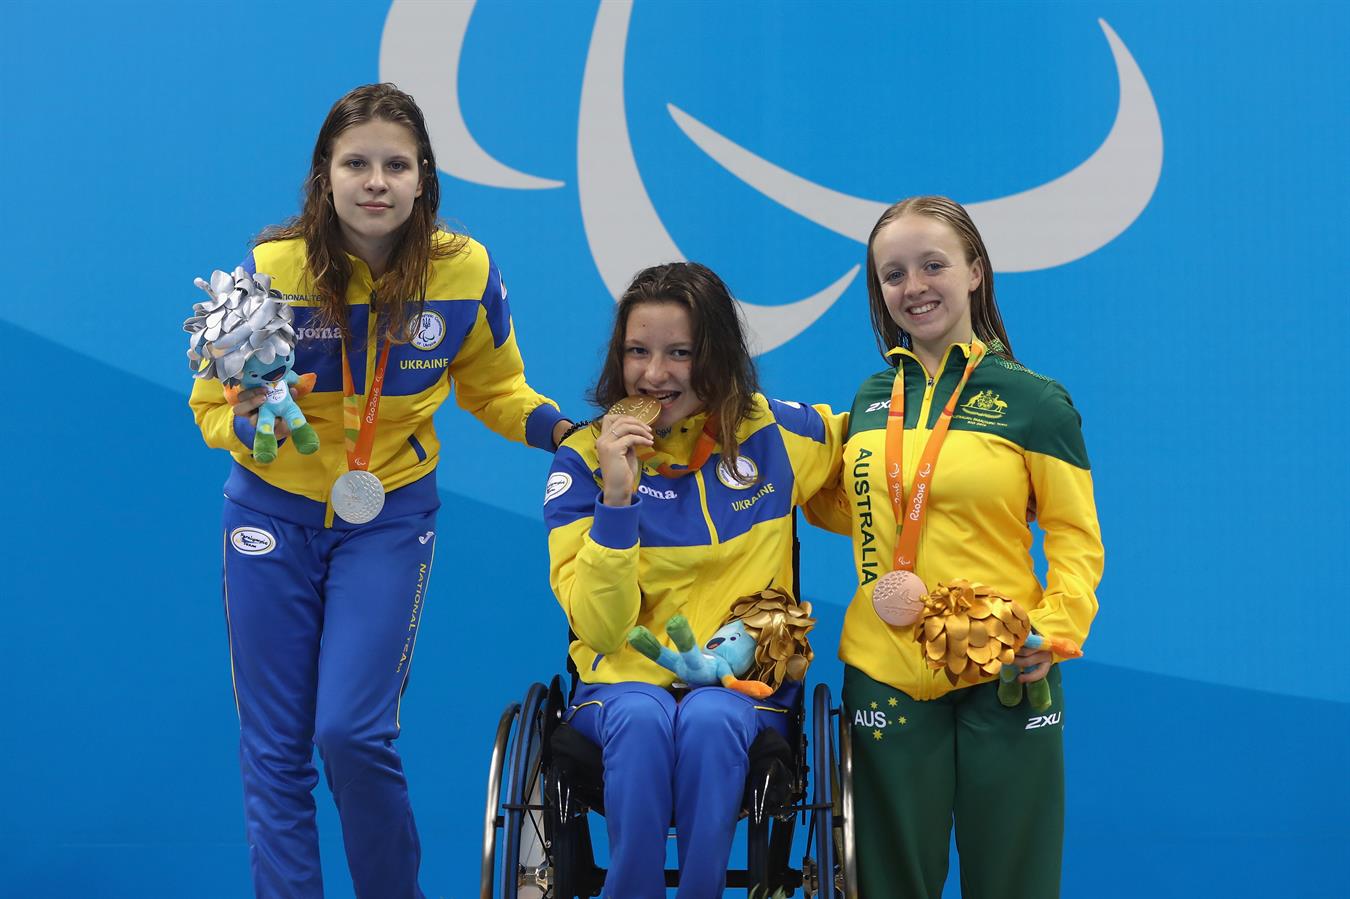 Елизавета Мерешко (в центре), Виктория Савцова (слева) и австралийка Тиффани Томас Кейн на пьедестале после заплыва на 50 м вольным стилем. Фото: rio2016.com